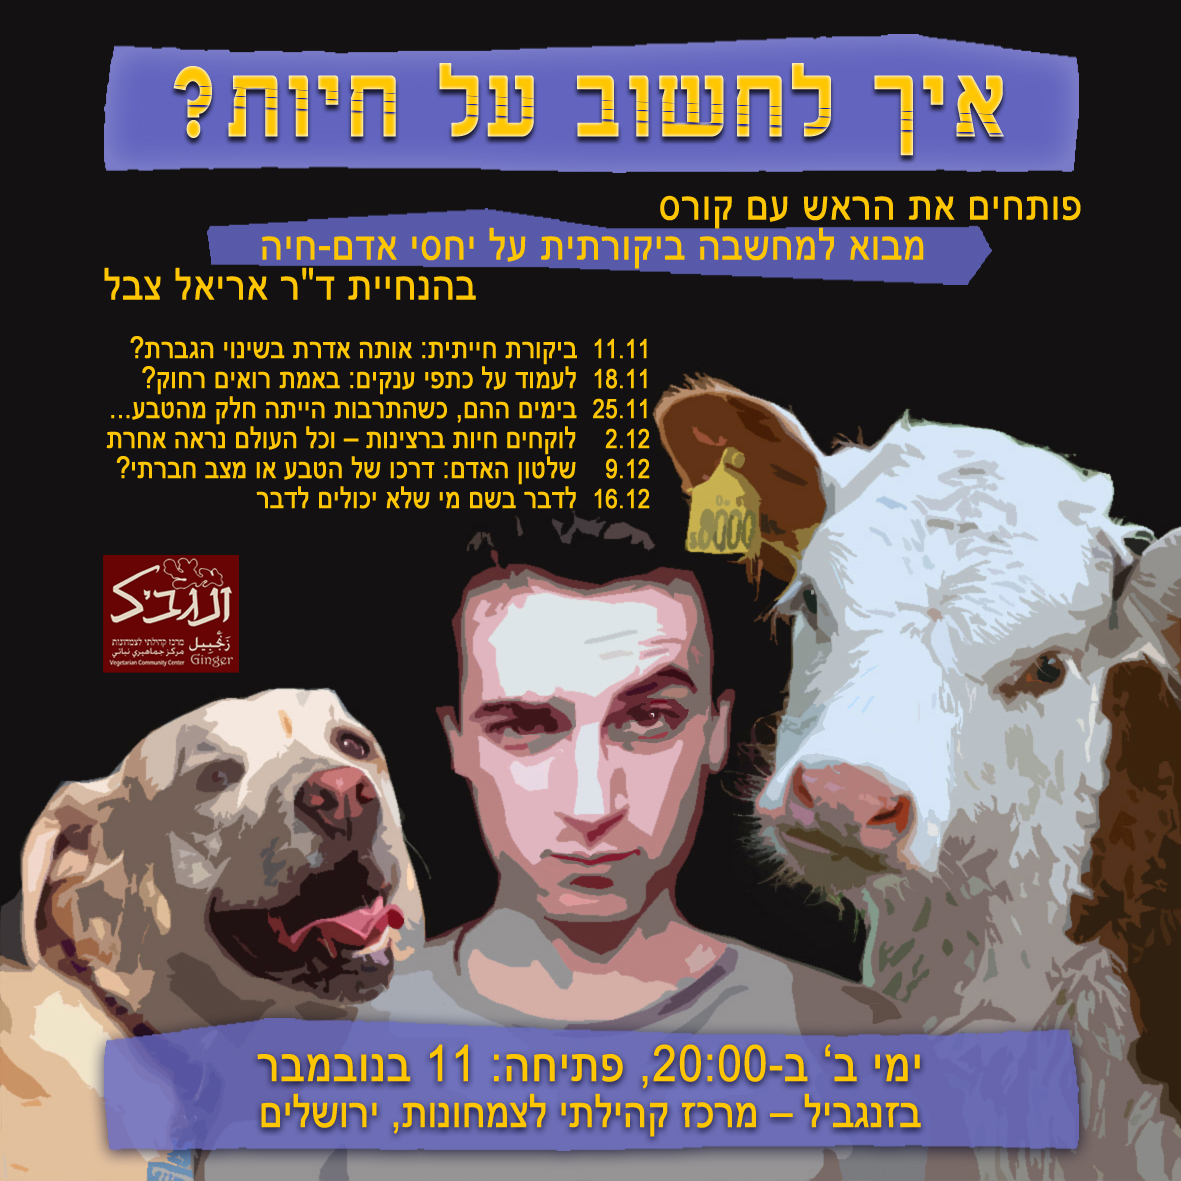 כרזת פרסומת לקורס "איך לחשוב על חיות", ירושלים 2013